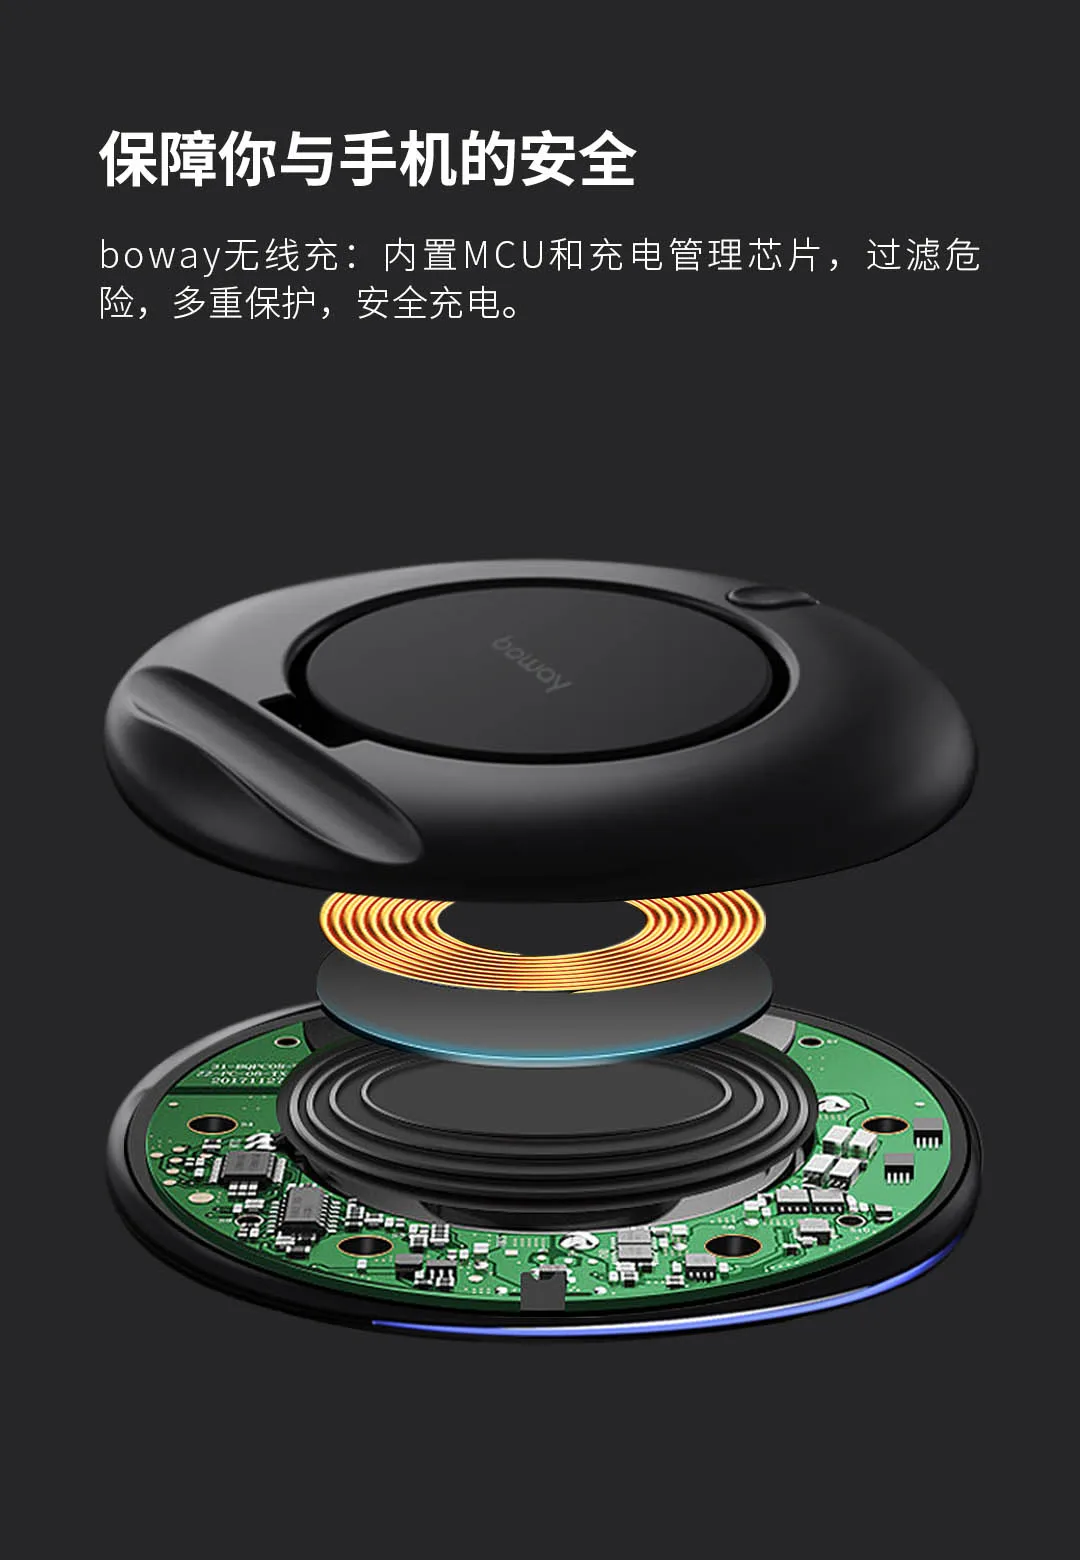 Xiaomi Youpin Boway Z1 складное Беспроводное зарядное устройство Вертикальная IOS Android 7,5 W/10 W безопасная быстрая зарядка интеллектуальная Совместимость